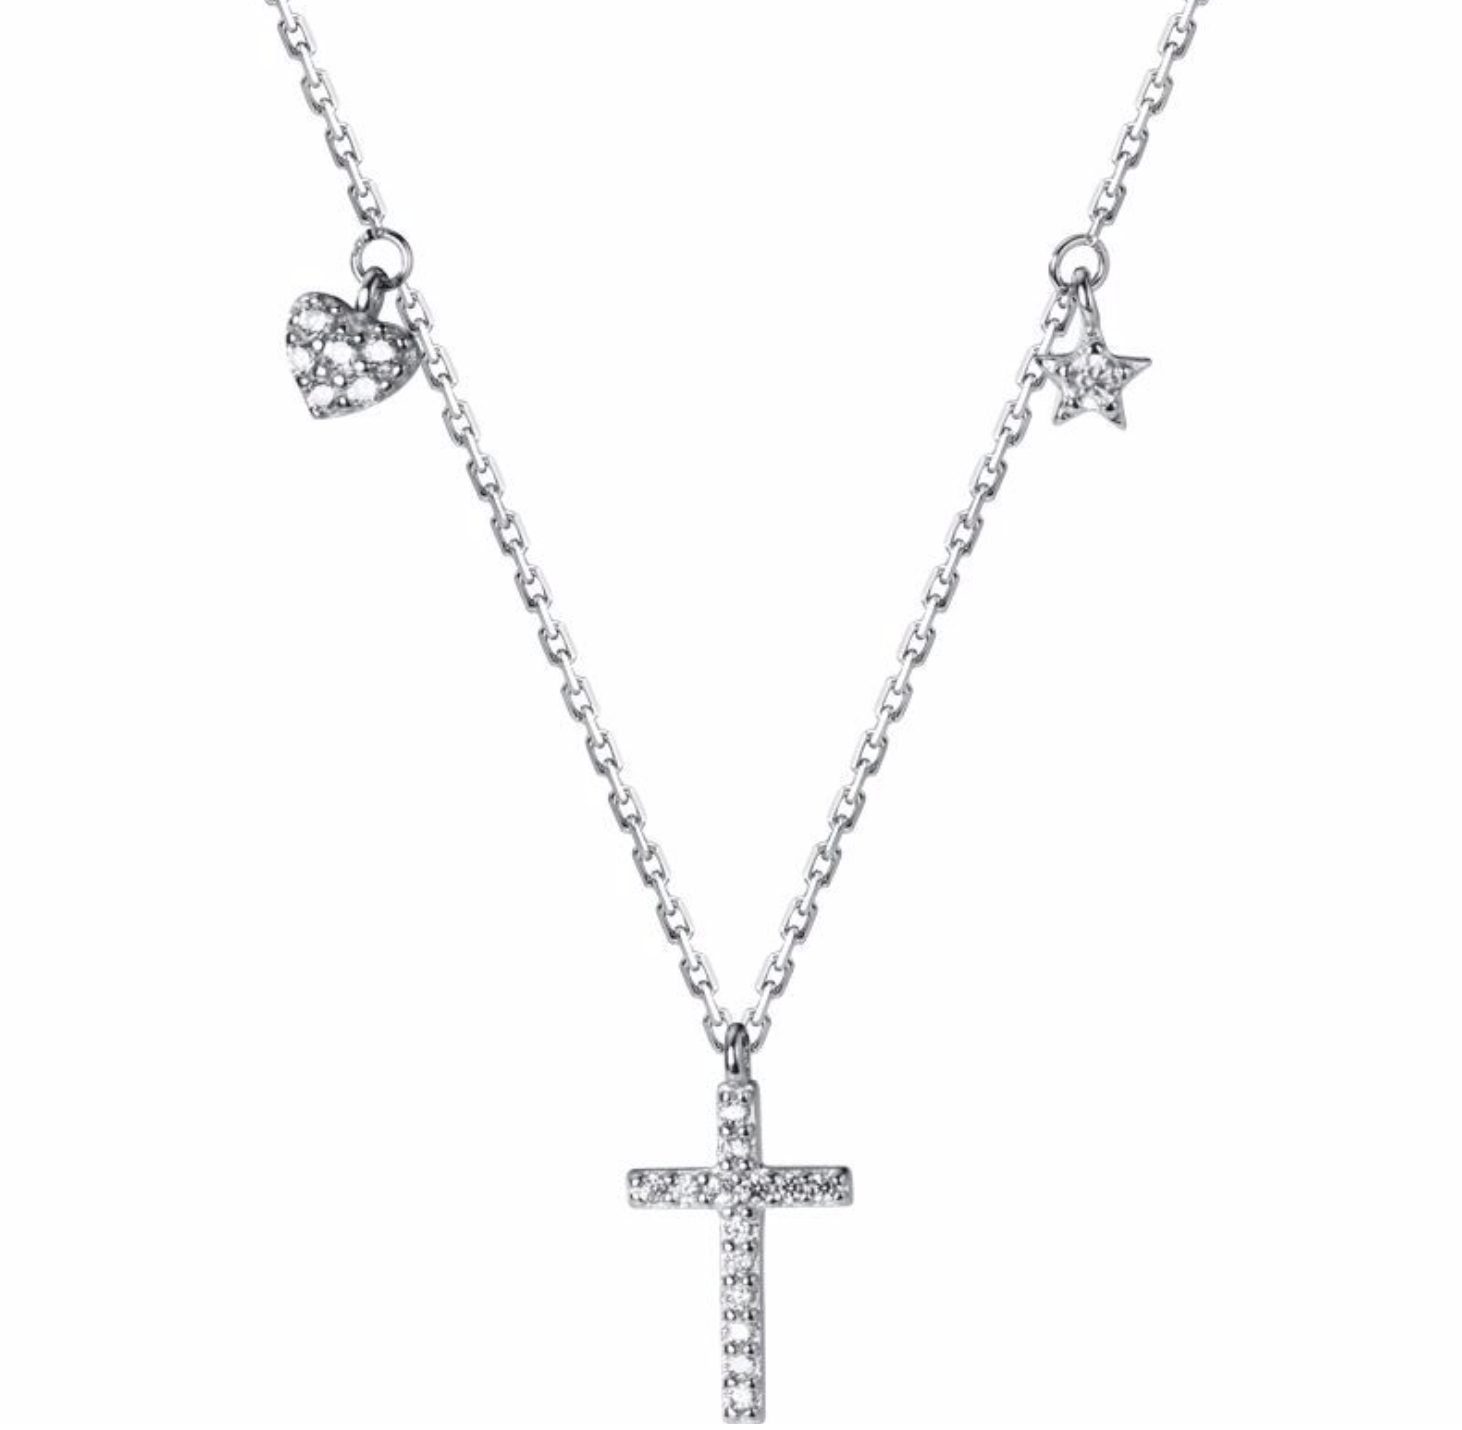 Fancifize Kette mit Anhänger Kreuz Anhänger Kreuz-07, 925 Sterling Silber Halskette Anhänger mit Zirkonia, Halskette 40+5cm